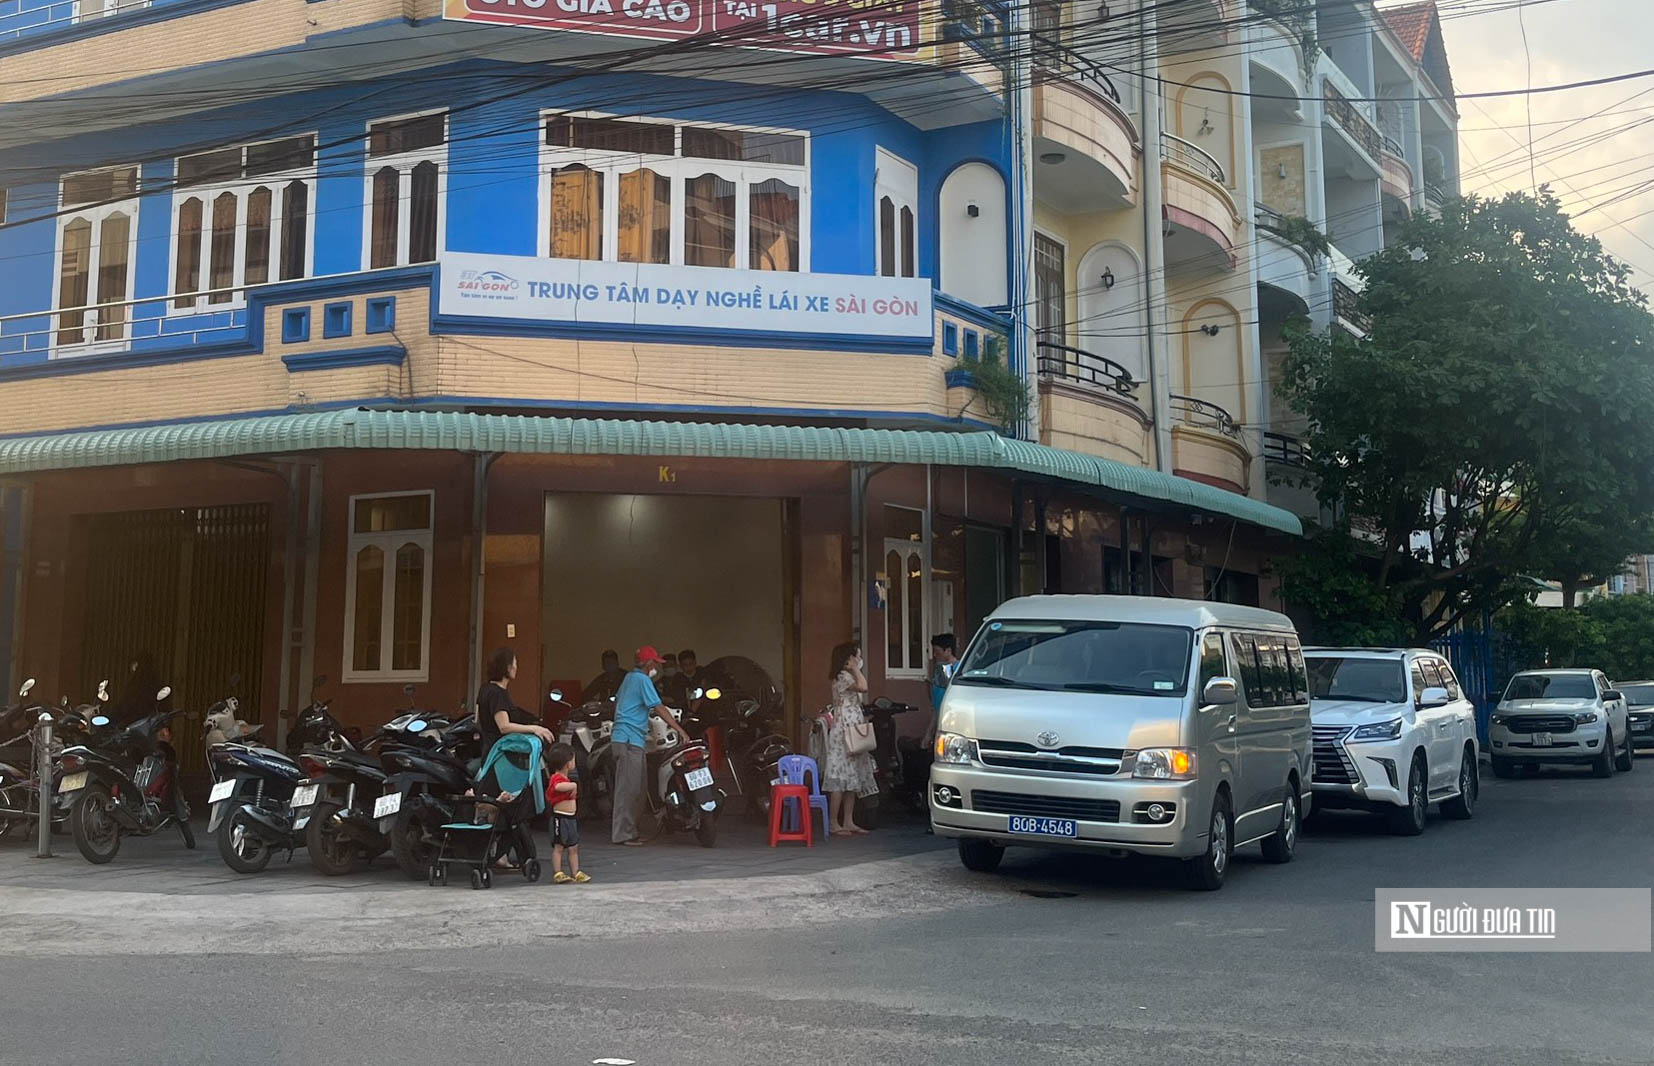 Dân sinh - Trung tâm dạy nghề lái xe Sài Gòn xin dời lịch thi sát hạch sau khi bị khám xét